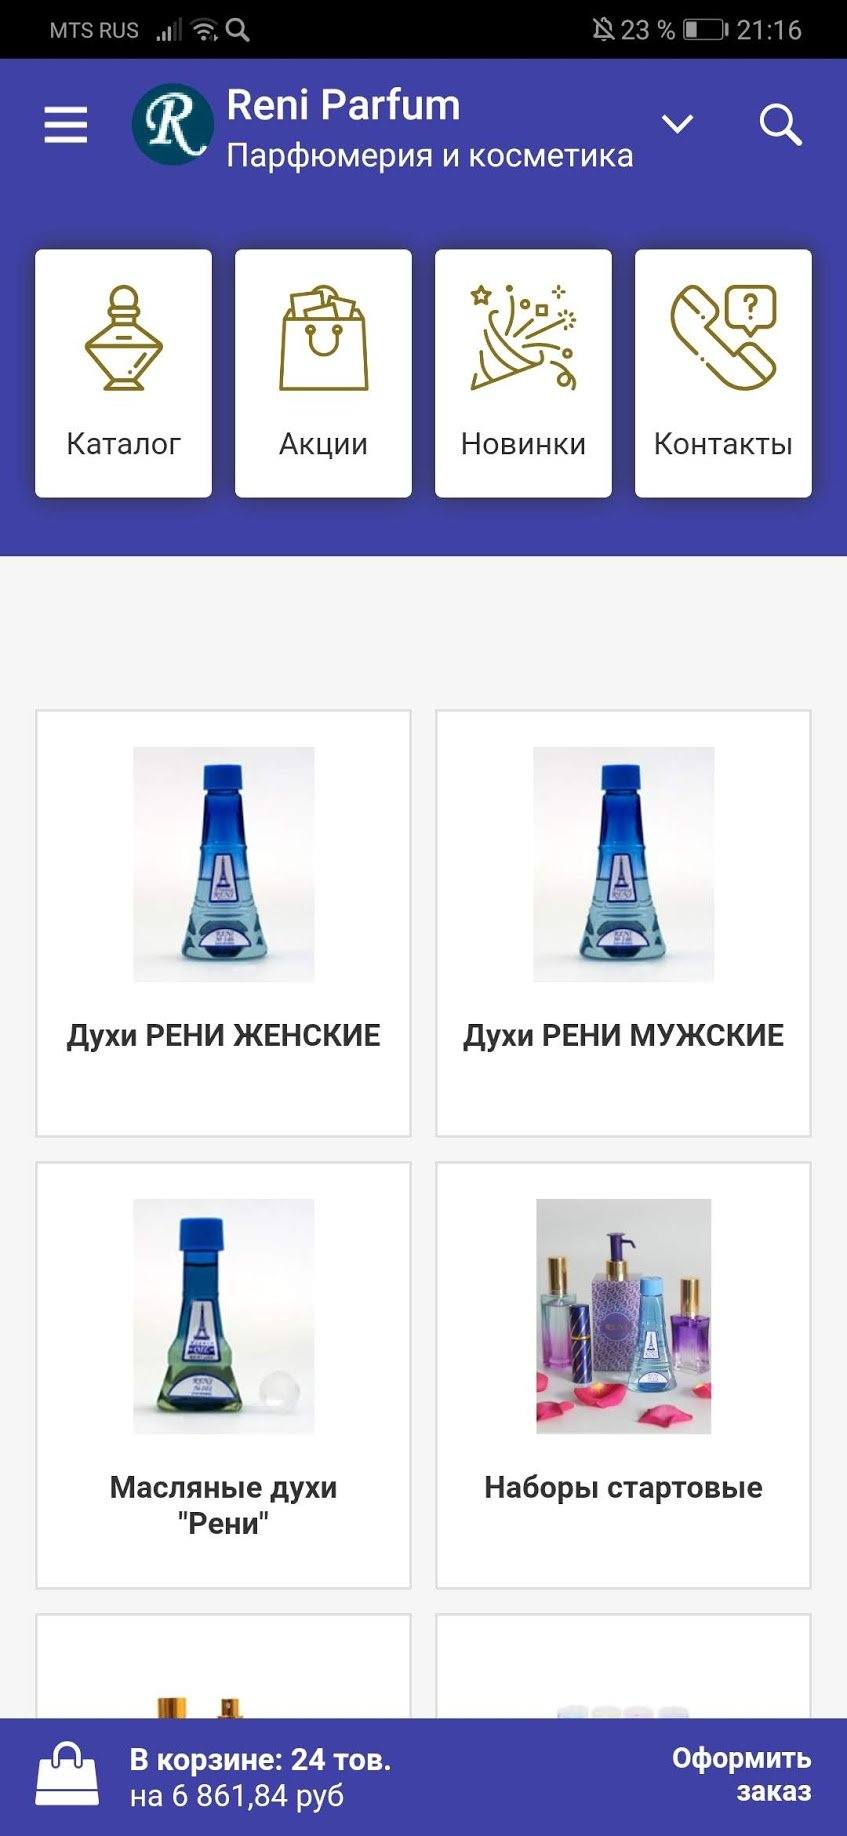 Мобильное приложение Reni Parfum битрикс